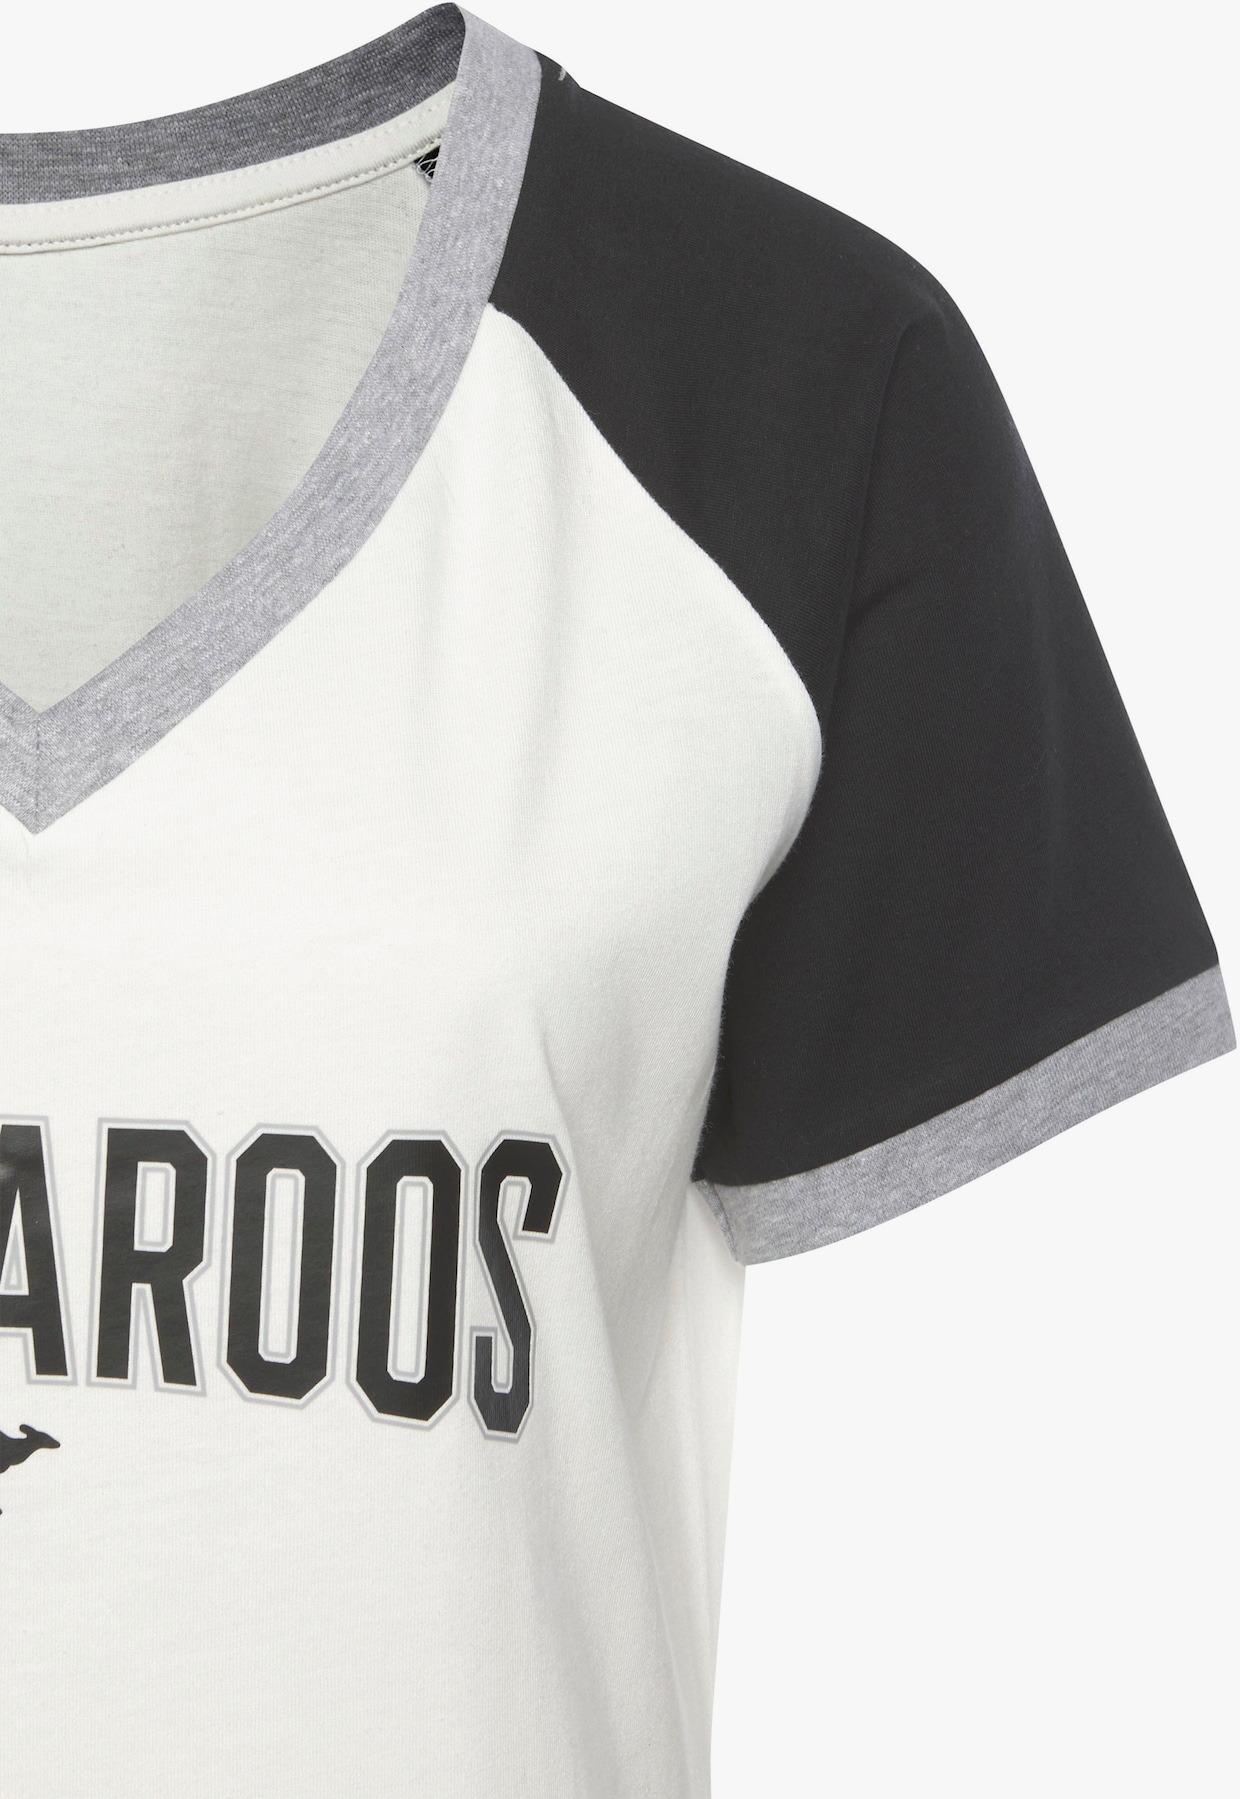 KangaROOS Bigshirt - schwarz-weiß